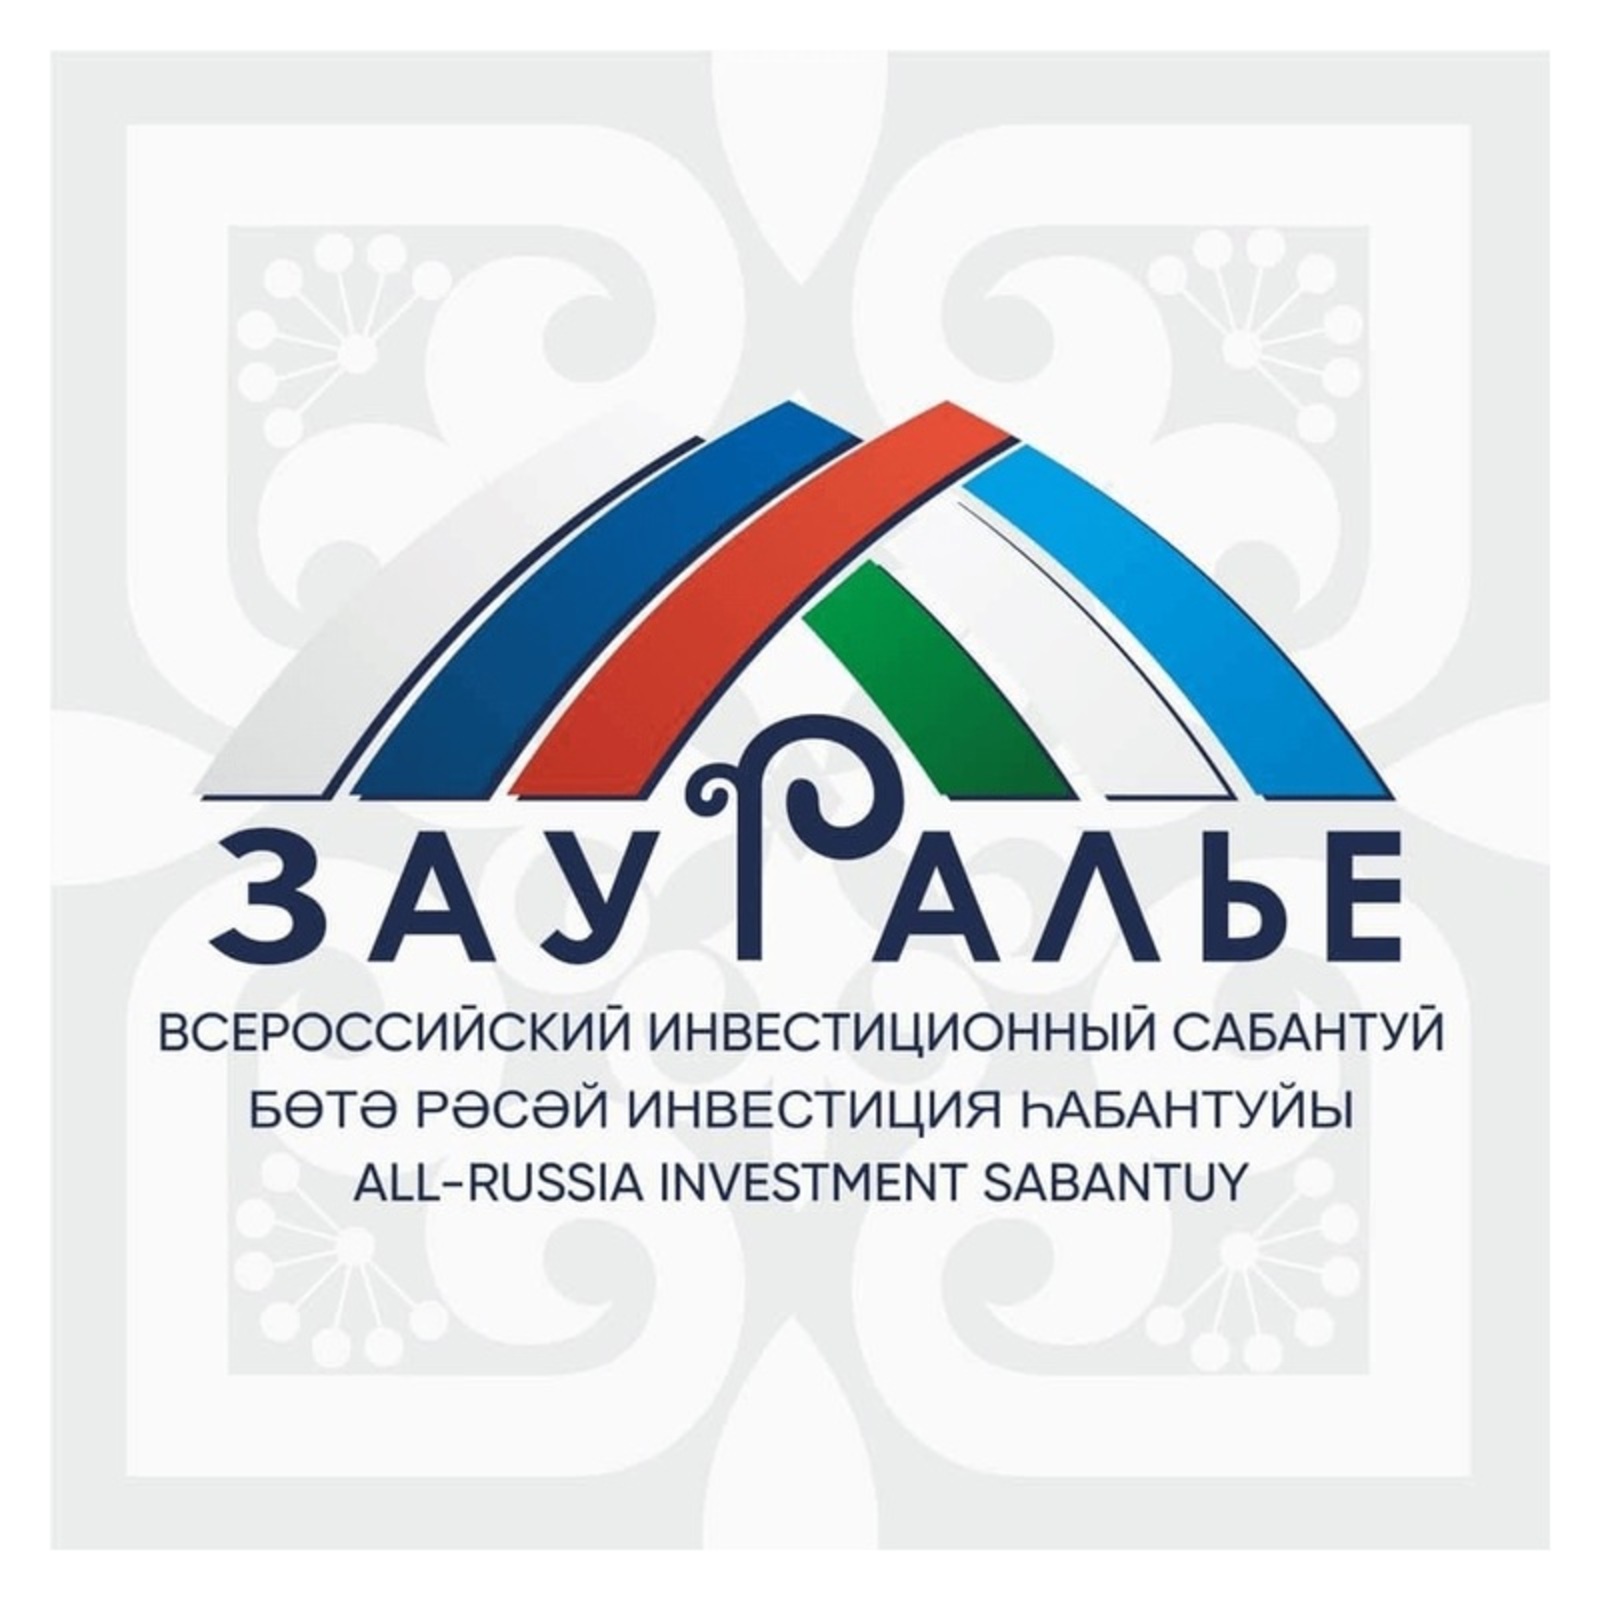 Компания «Генезис Агро Трейд» будет реализовать на территории Республики Башкортостан инвестиционный проект по производству гибридных семян подсолнечника и других культур